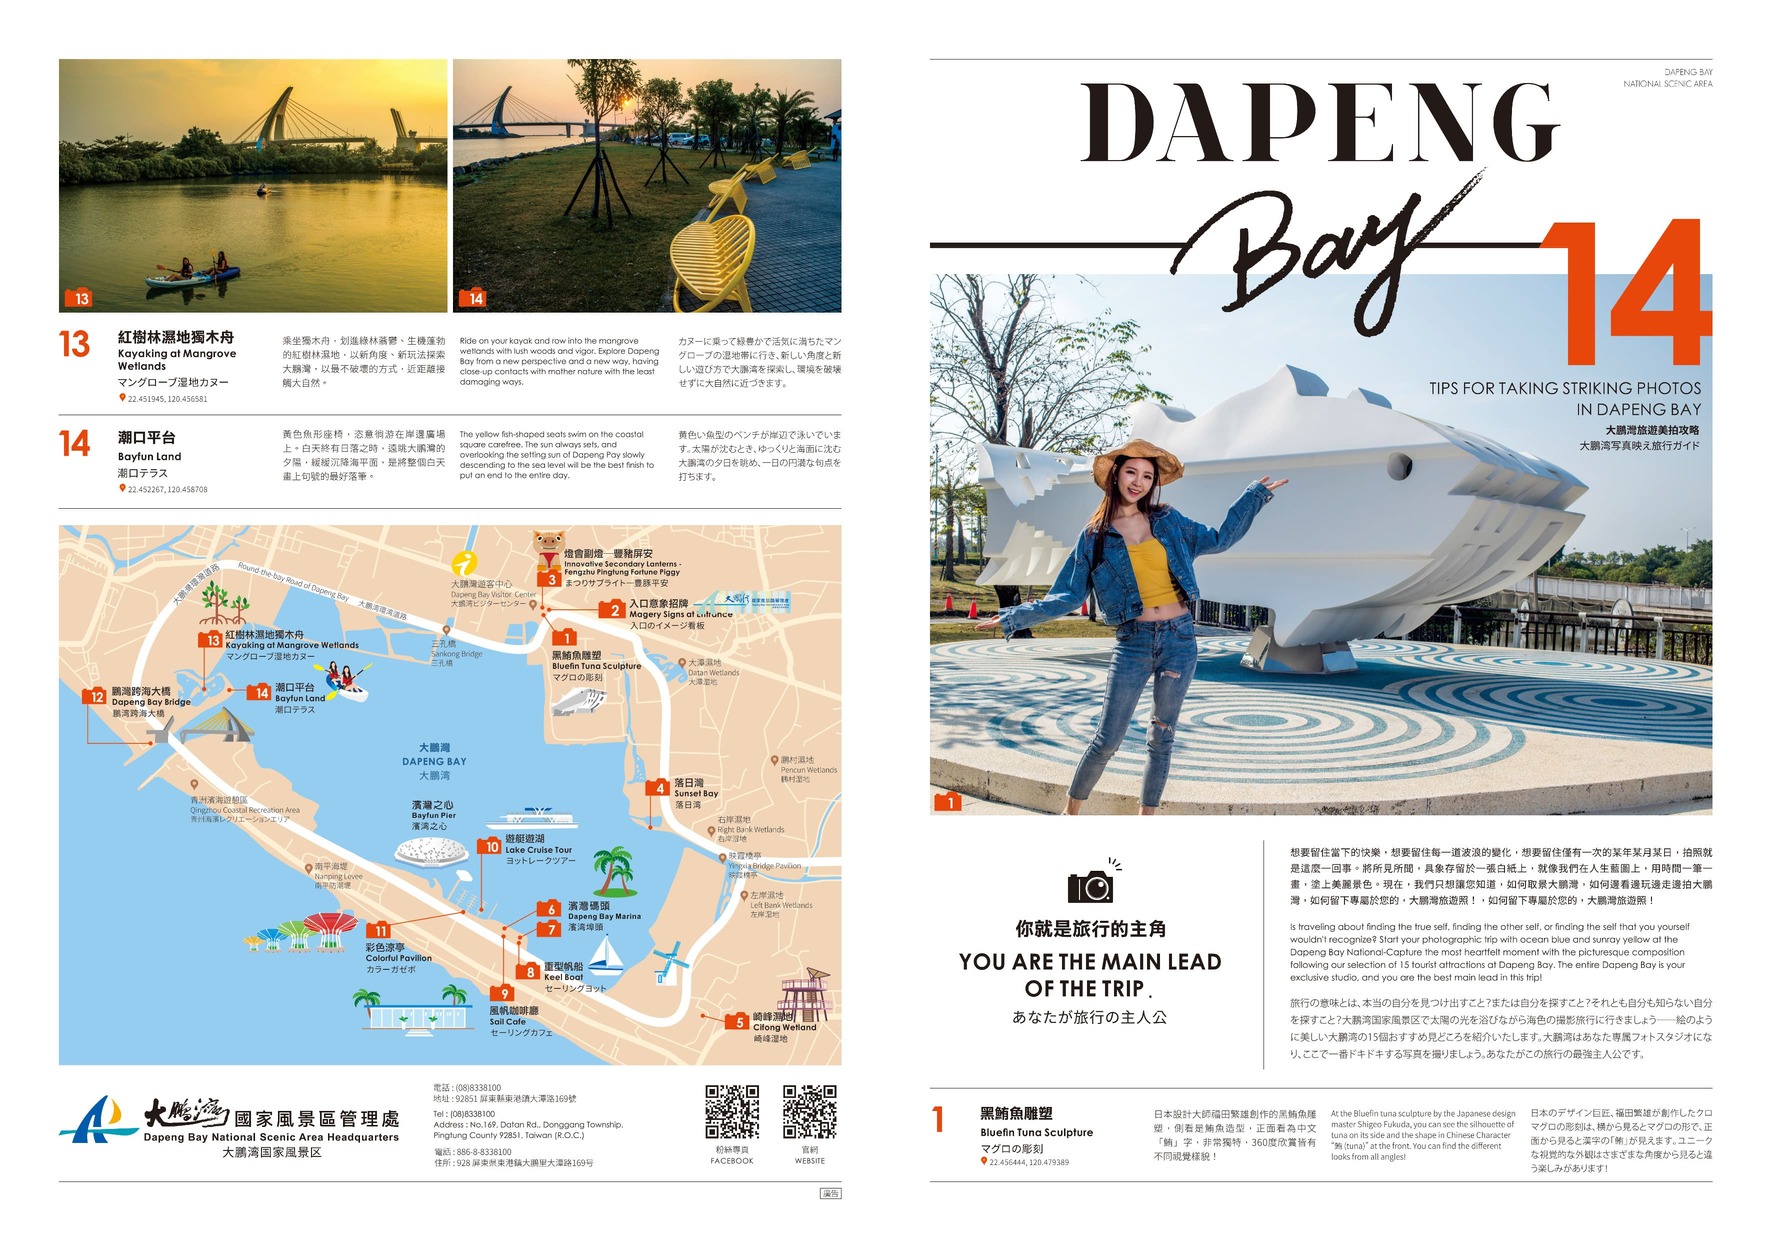 Tips for Taking Striking Photos in Dapeng Bay